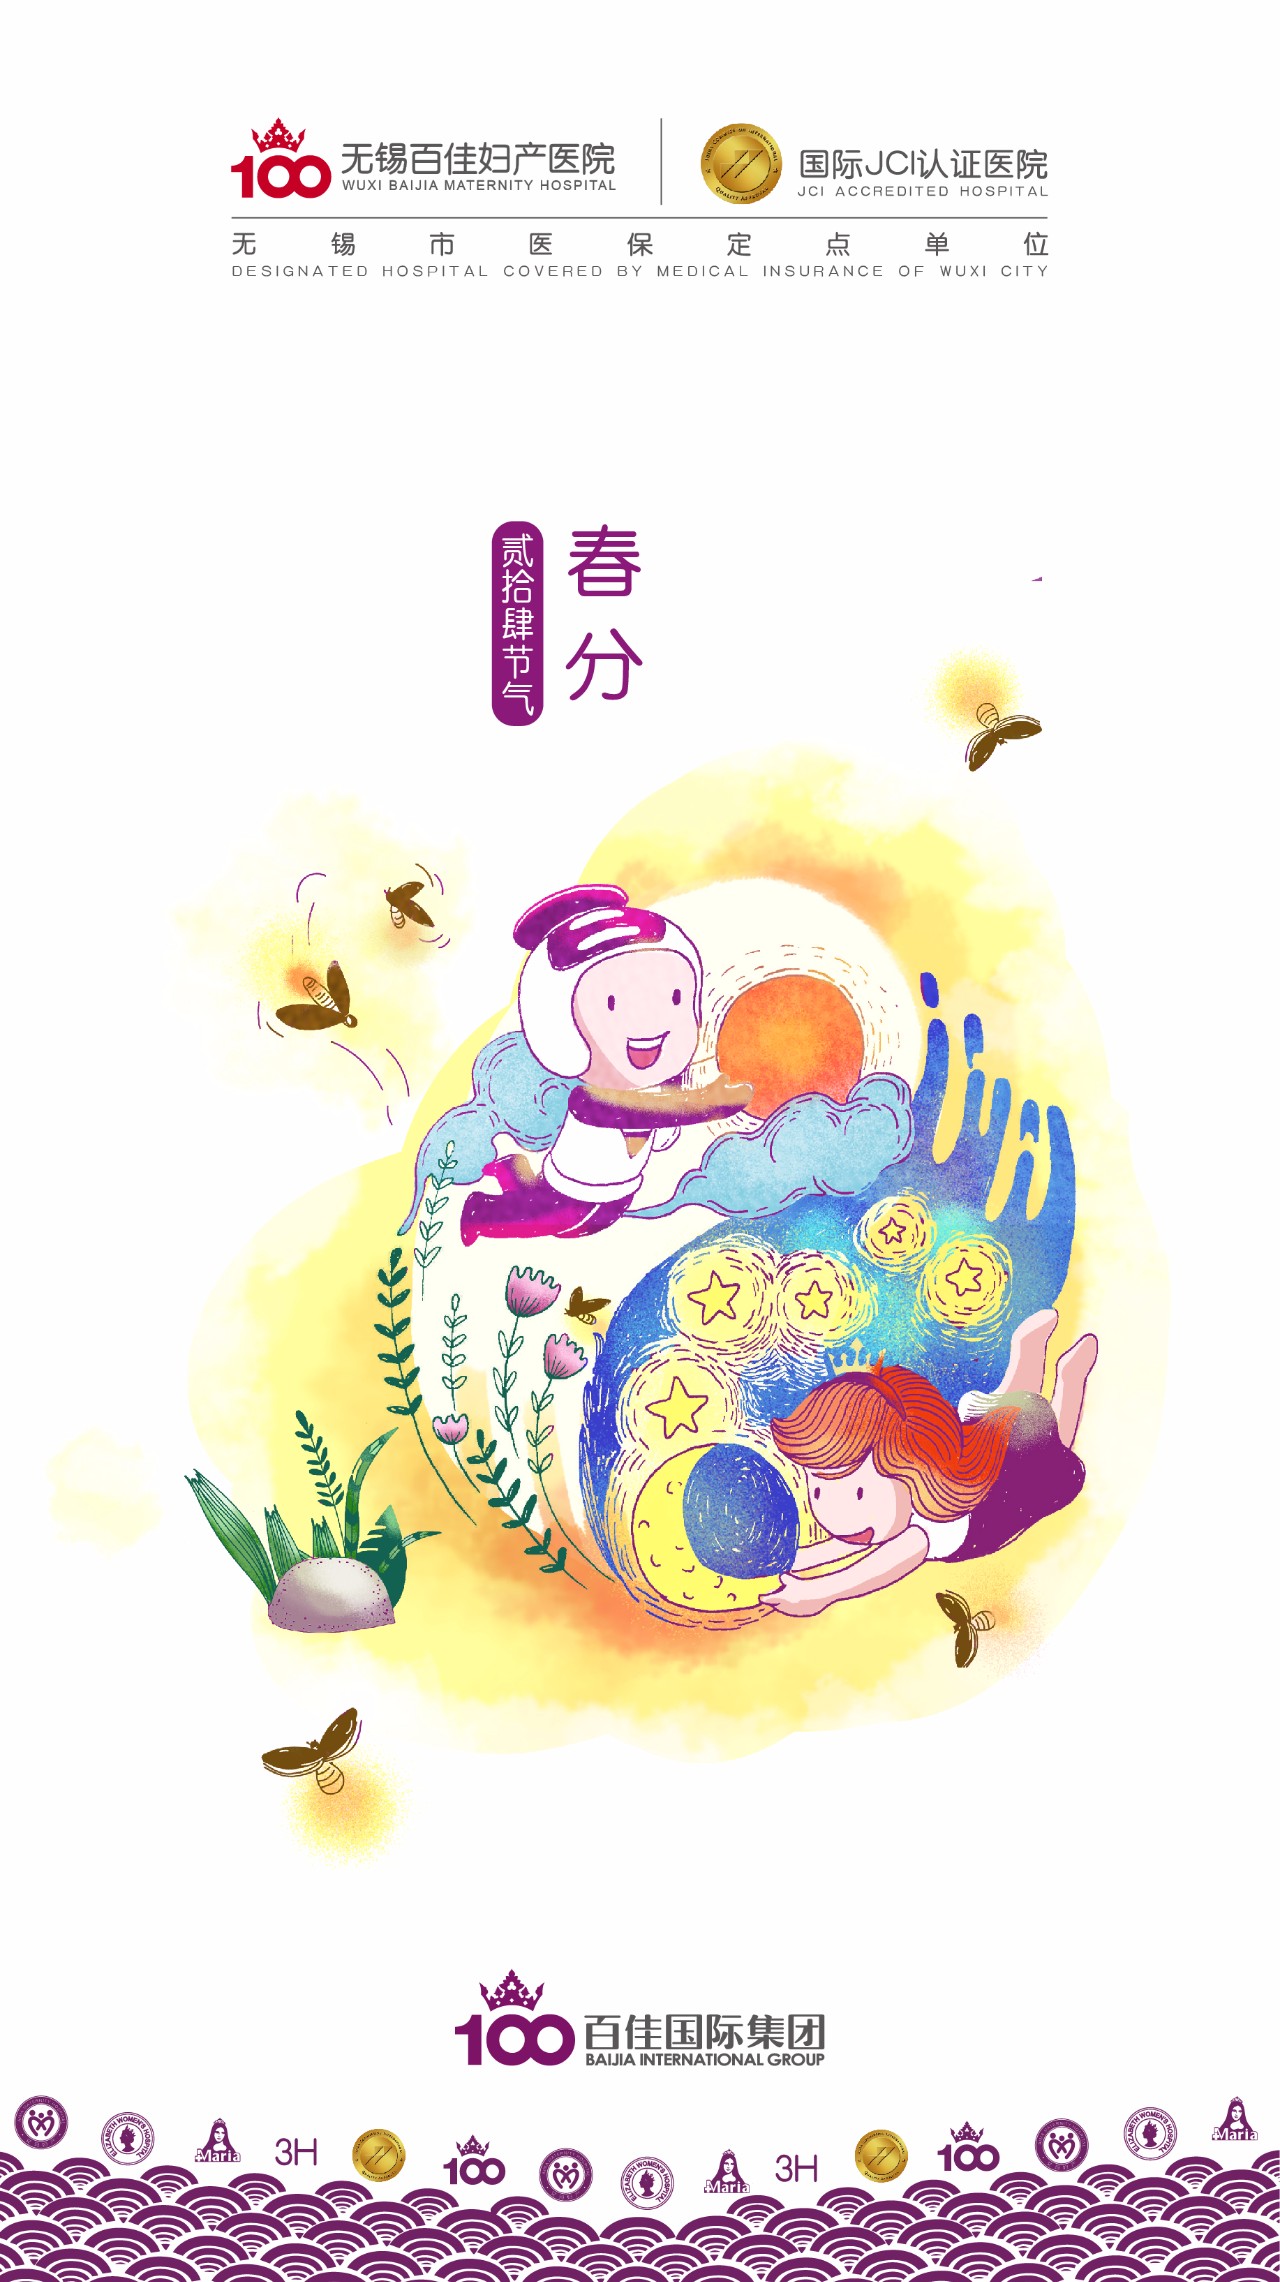 【百佳·周年庆】春分时节 | 采撷幸福的季节